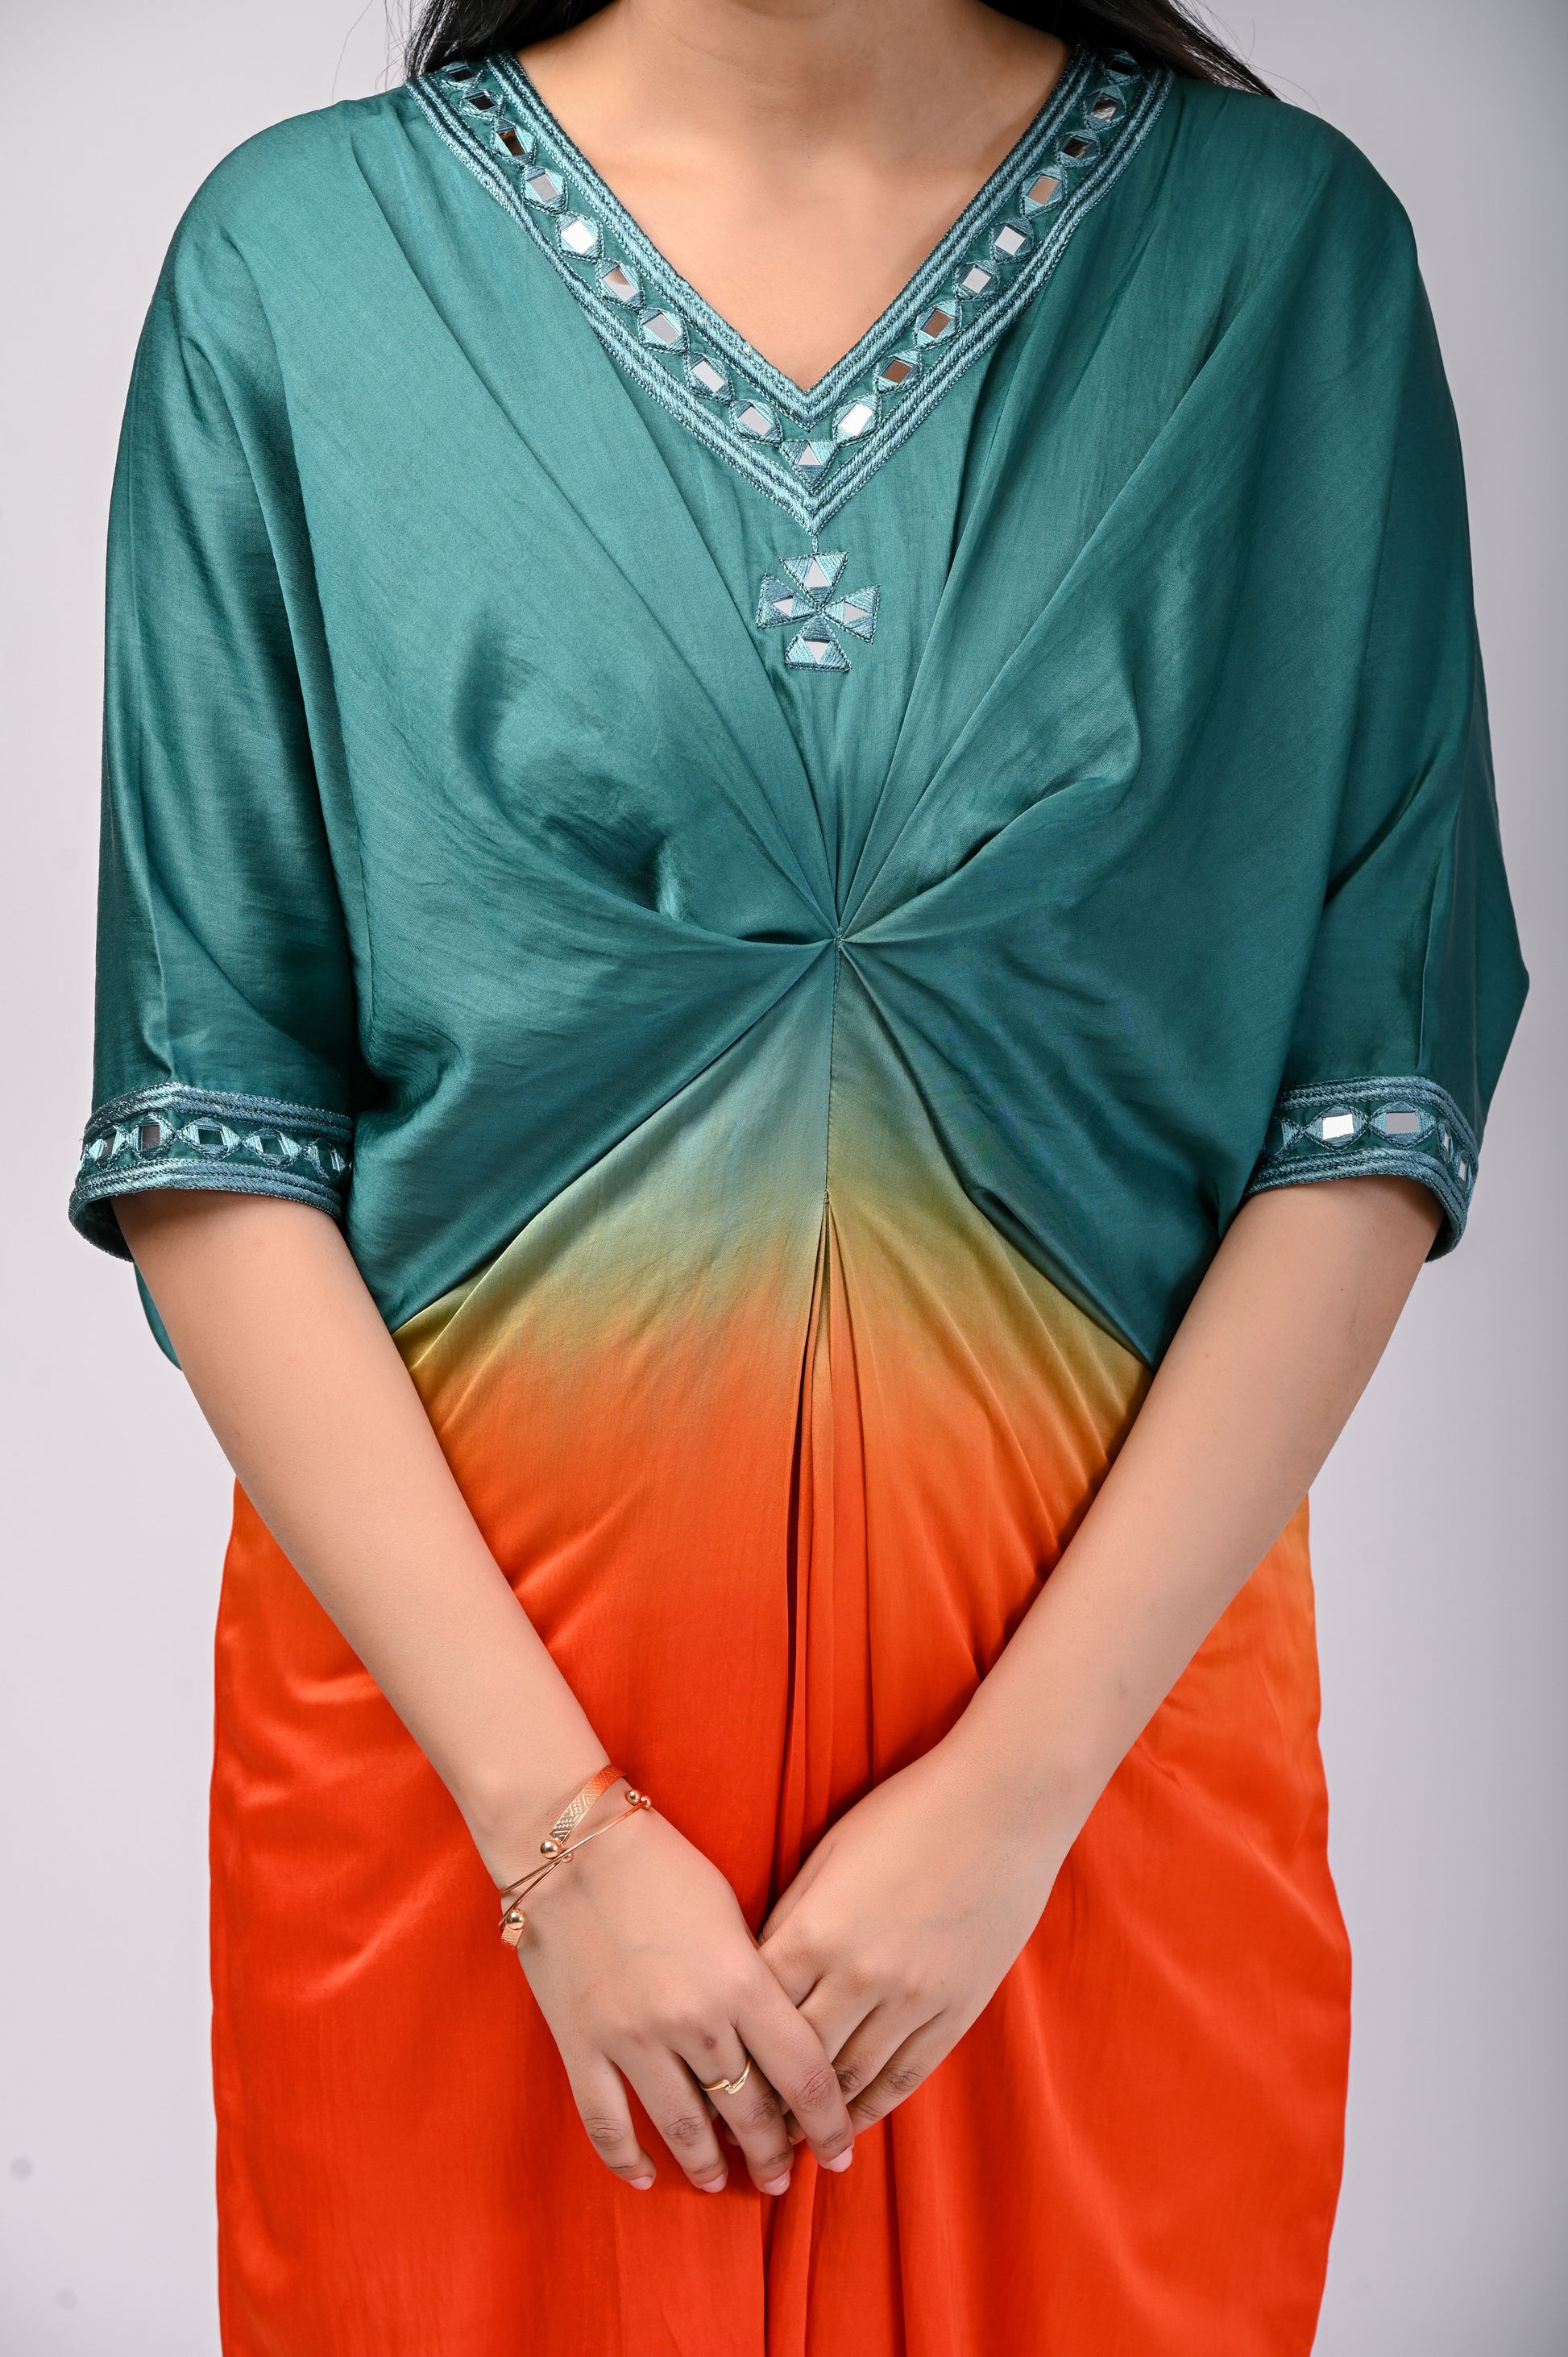 Buy Blue Modal V Neck Hand Embroidered Kaftan Maxi Dress For Women